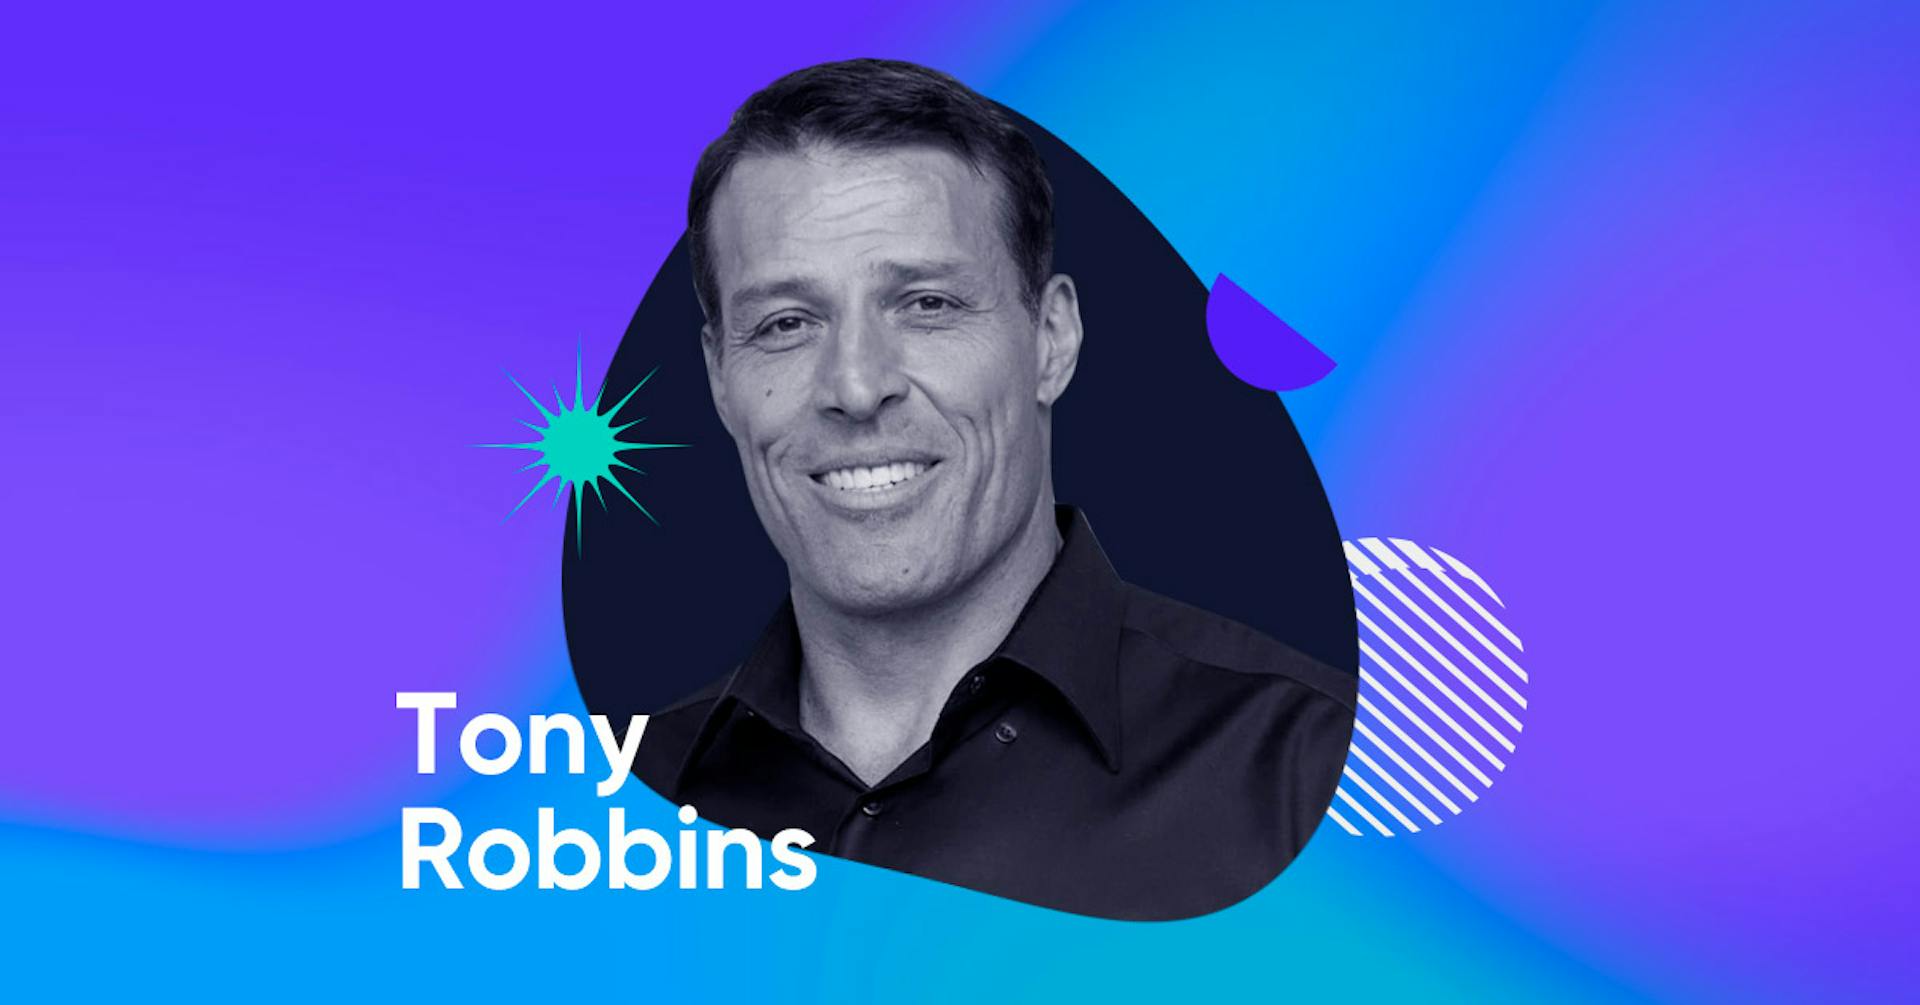 Descubre quién es Tony Robbins y sus claves para el éxito